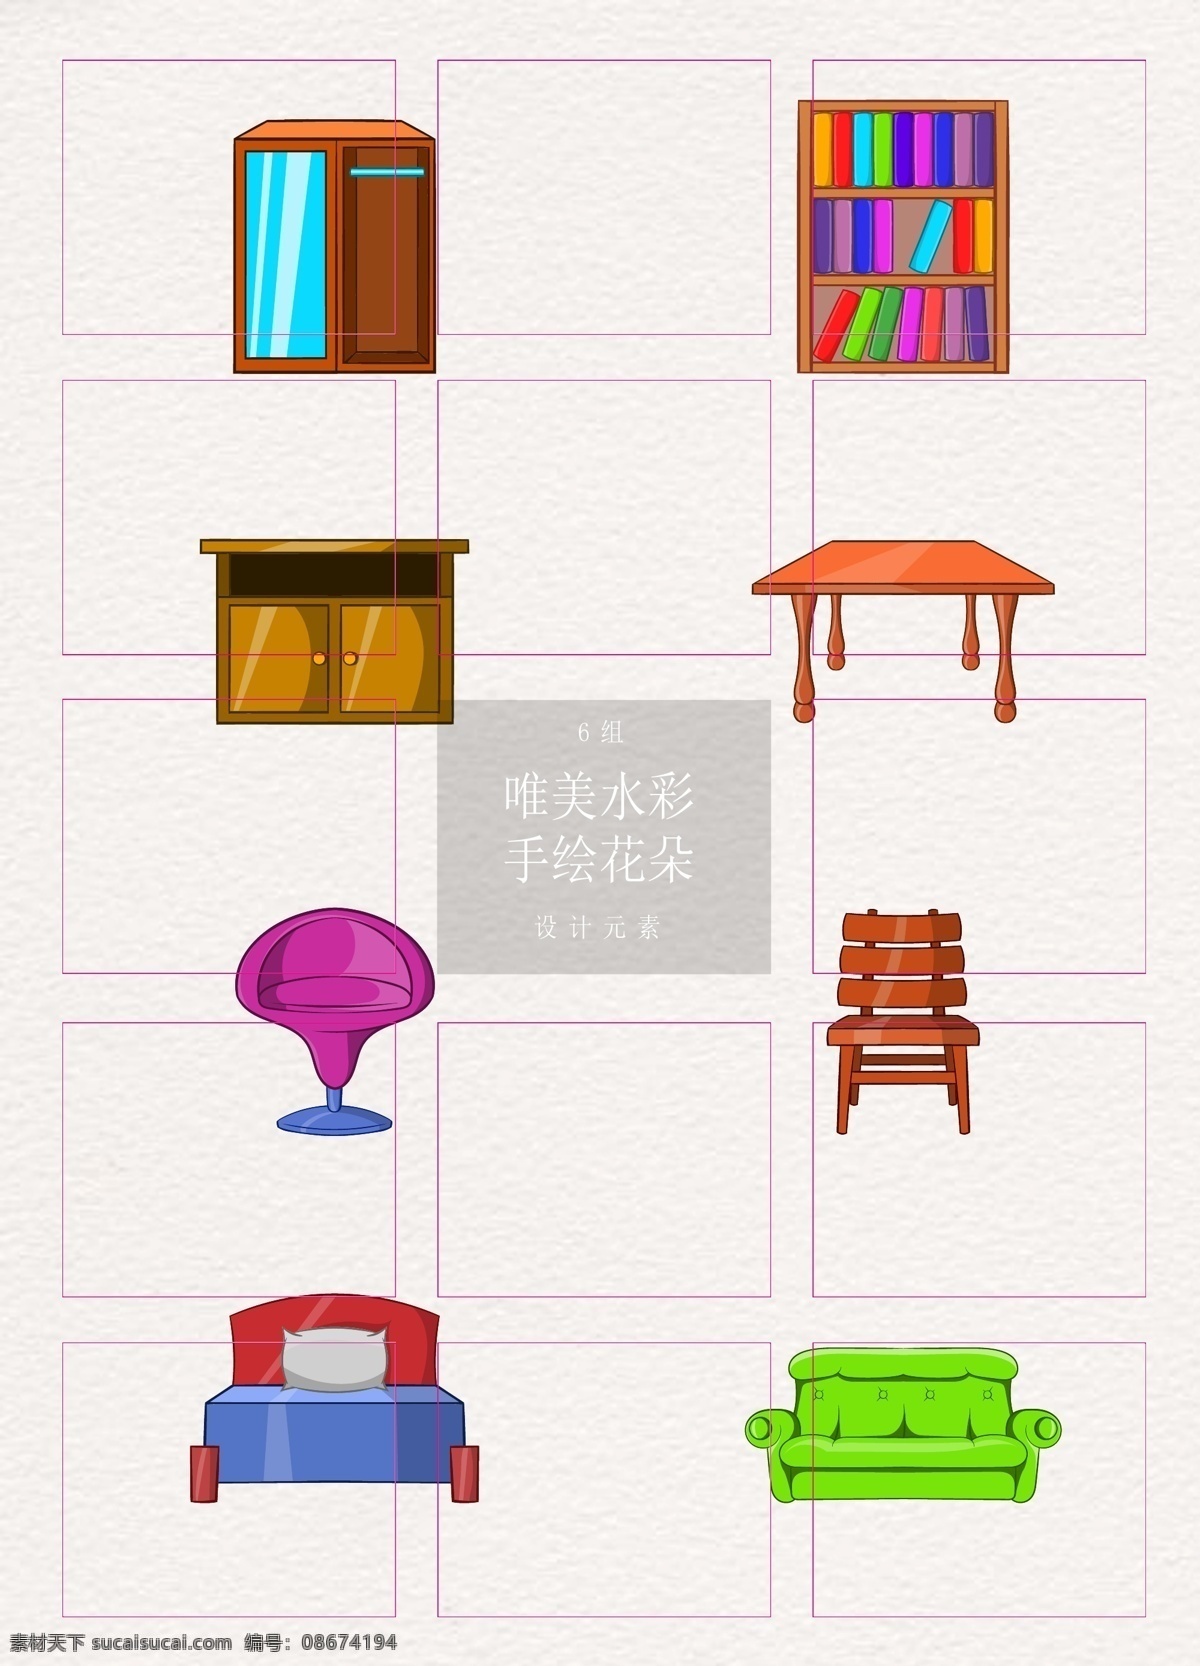 卡通 创意 家具 元素 矢量图 桌子 沙发 ai元素 家居设计 衣橱 书柜 柜子 椅子 凳子 床 彩色设计